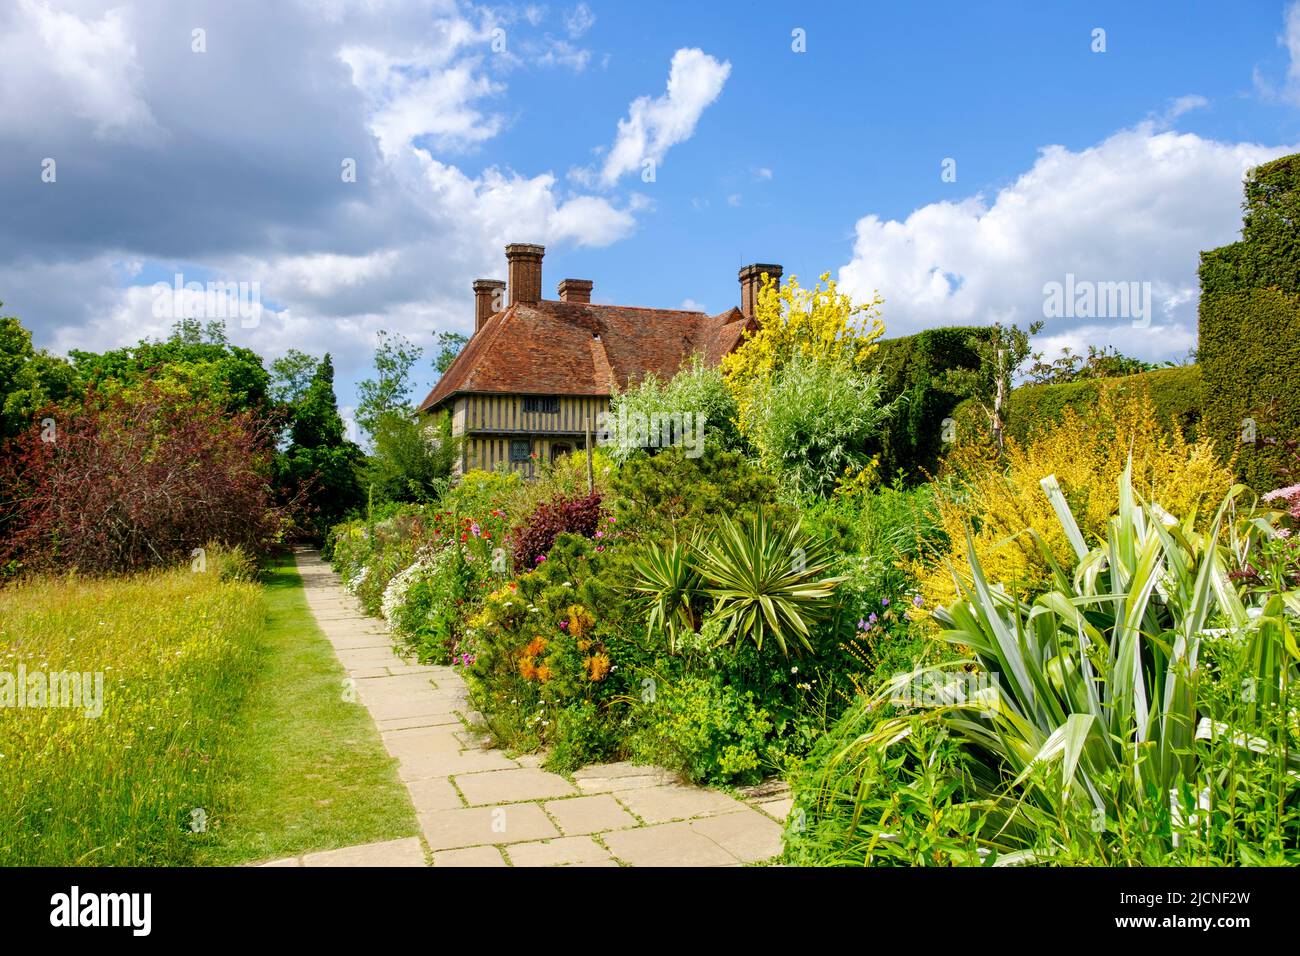 Maison et jardins de Great Dixter, la longue frontière, East Sussex, Royaume-Uni Banque D'Images